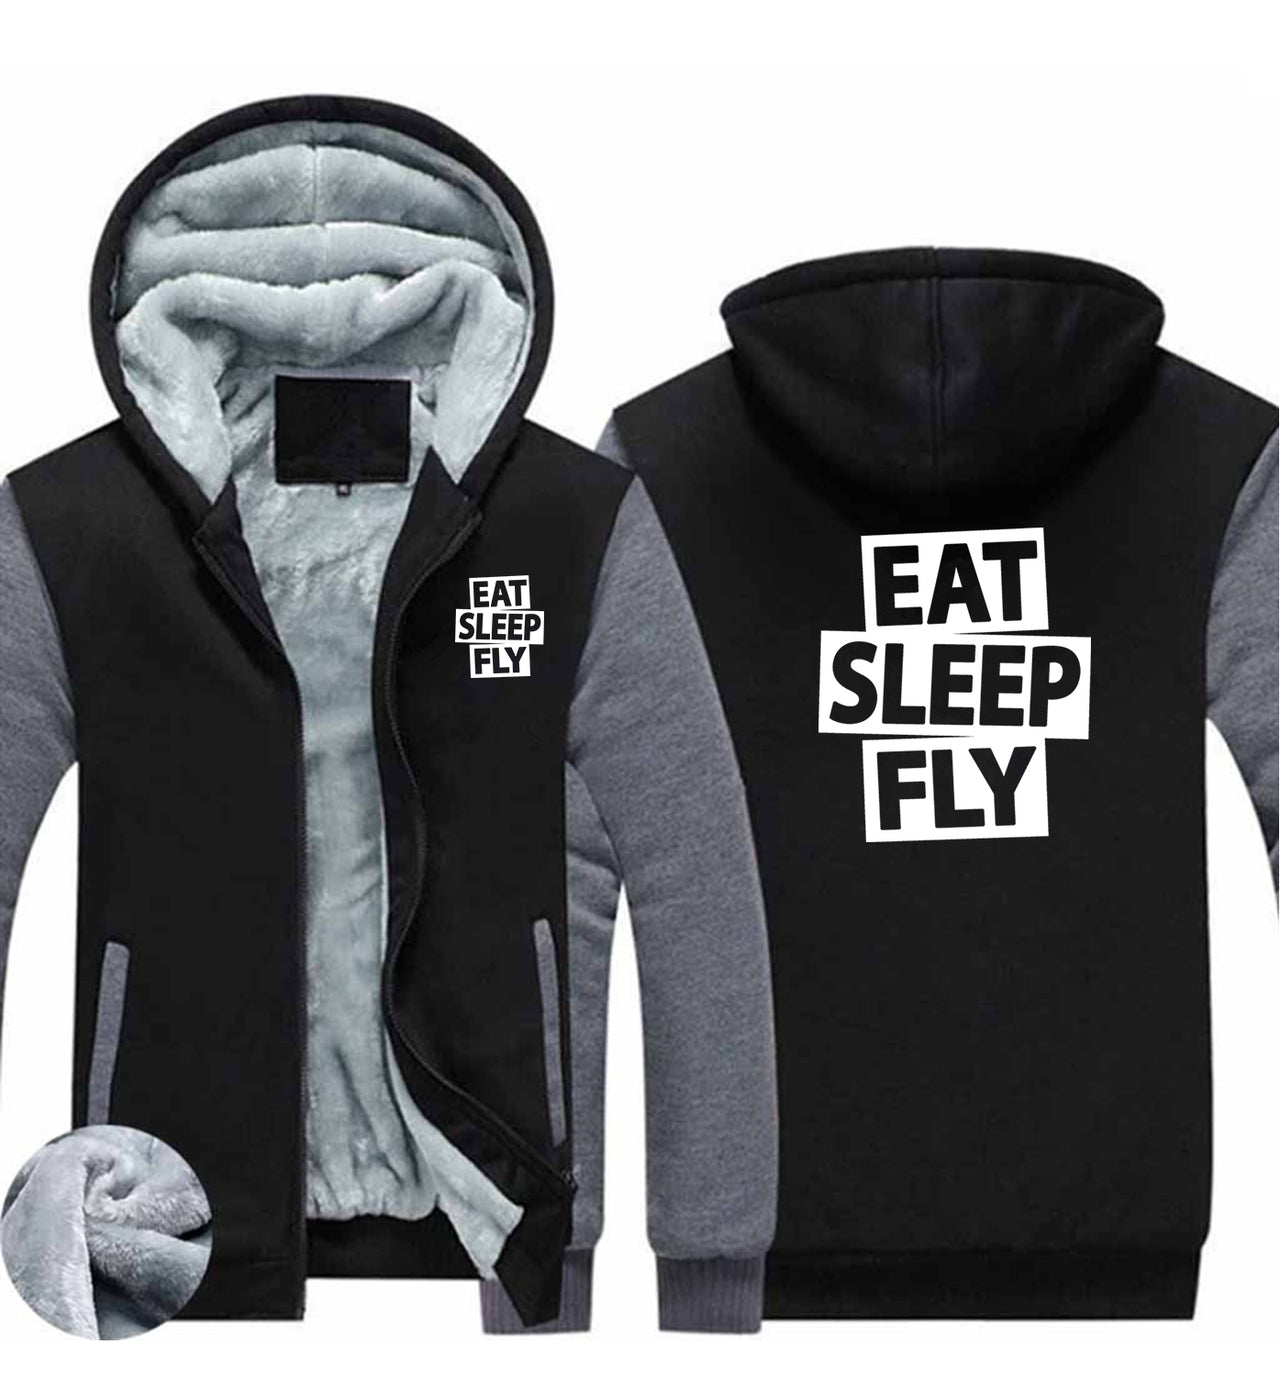 Eat Sleep Fly Designed Zipped Sweatshirts